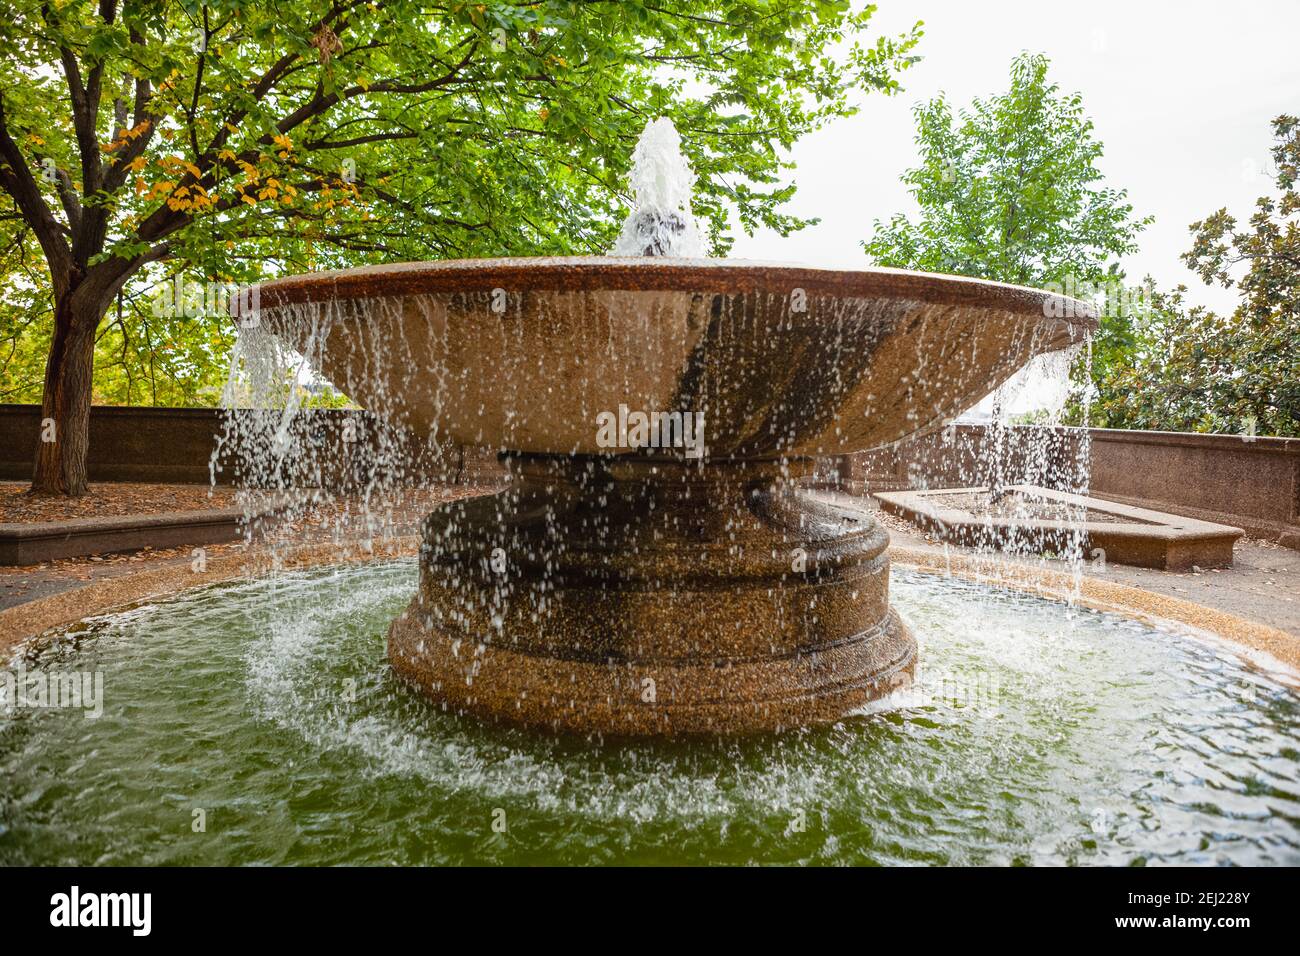 Gran fuente circular en los jardines superiores de Meridian Hill Park, ubicado en el barrio Columbia Heights de Washington, DC Foto de stock